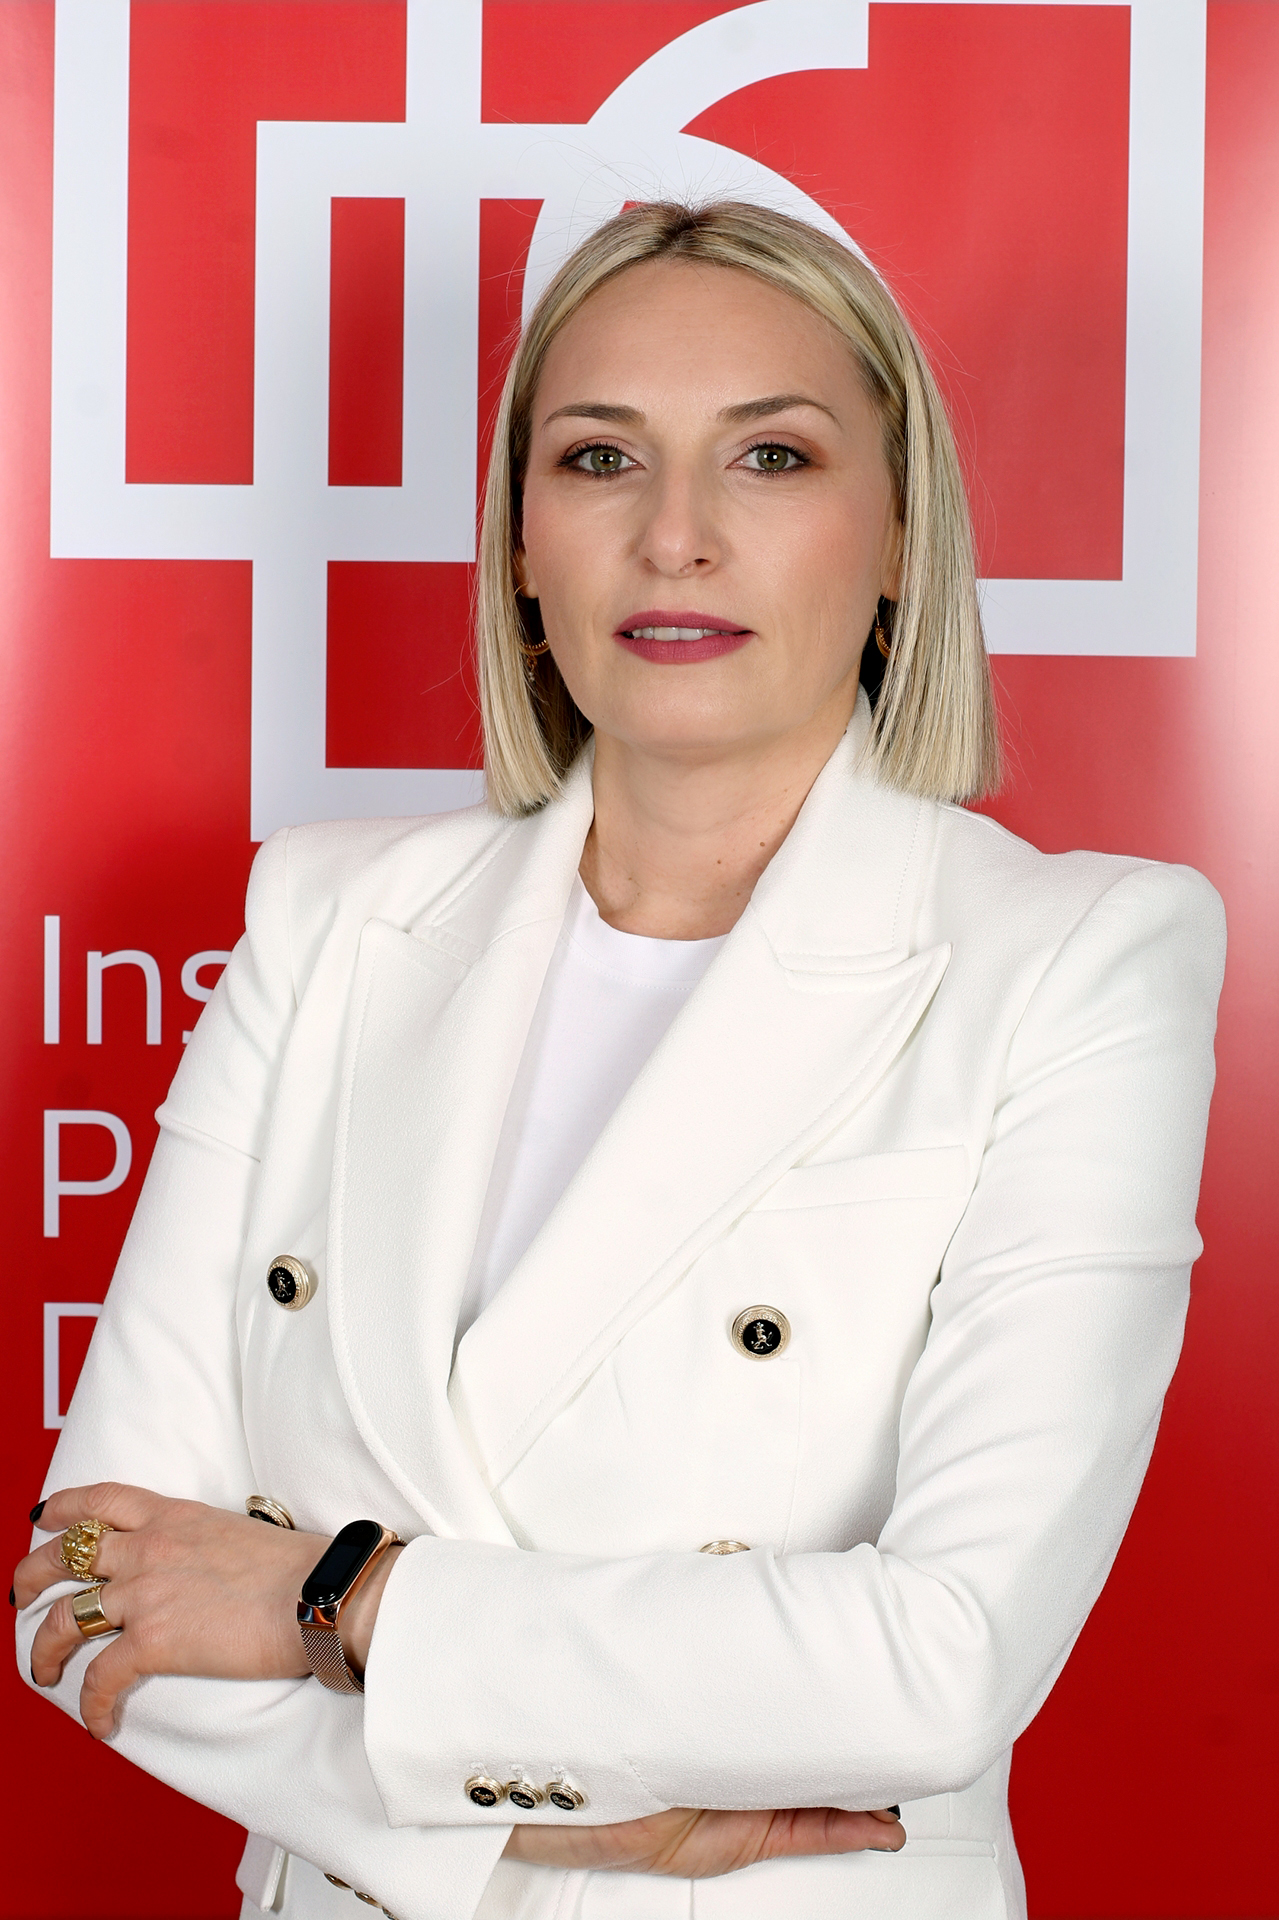 Irina Rizvan